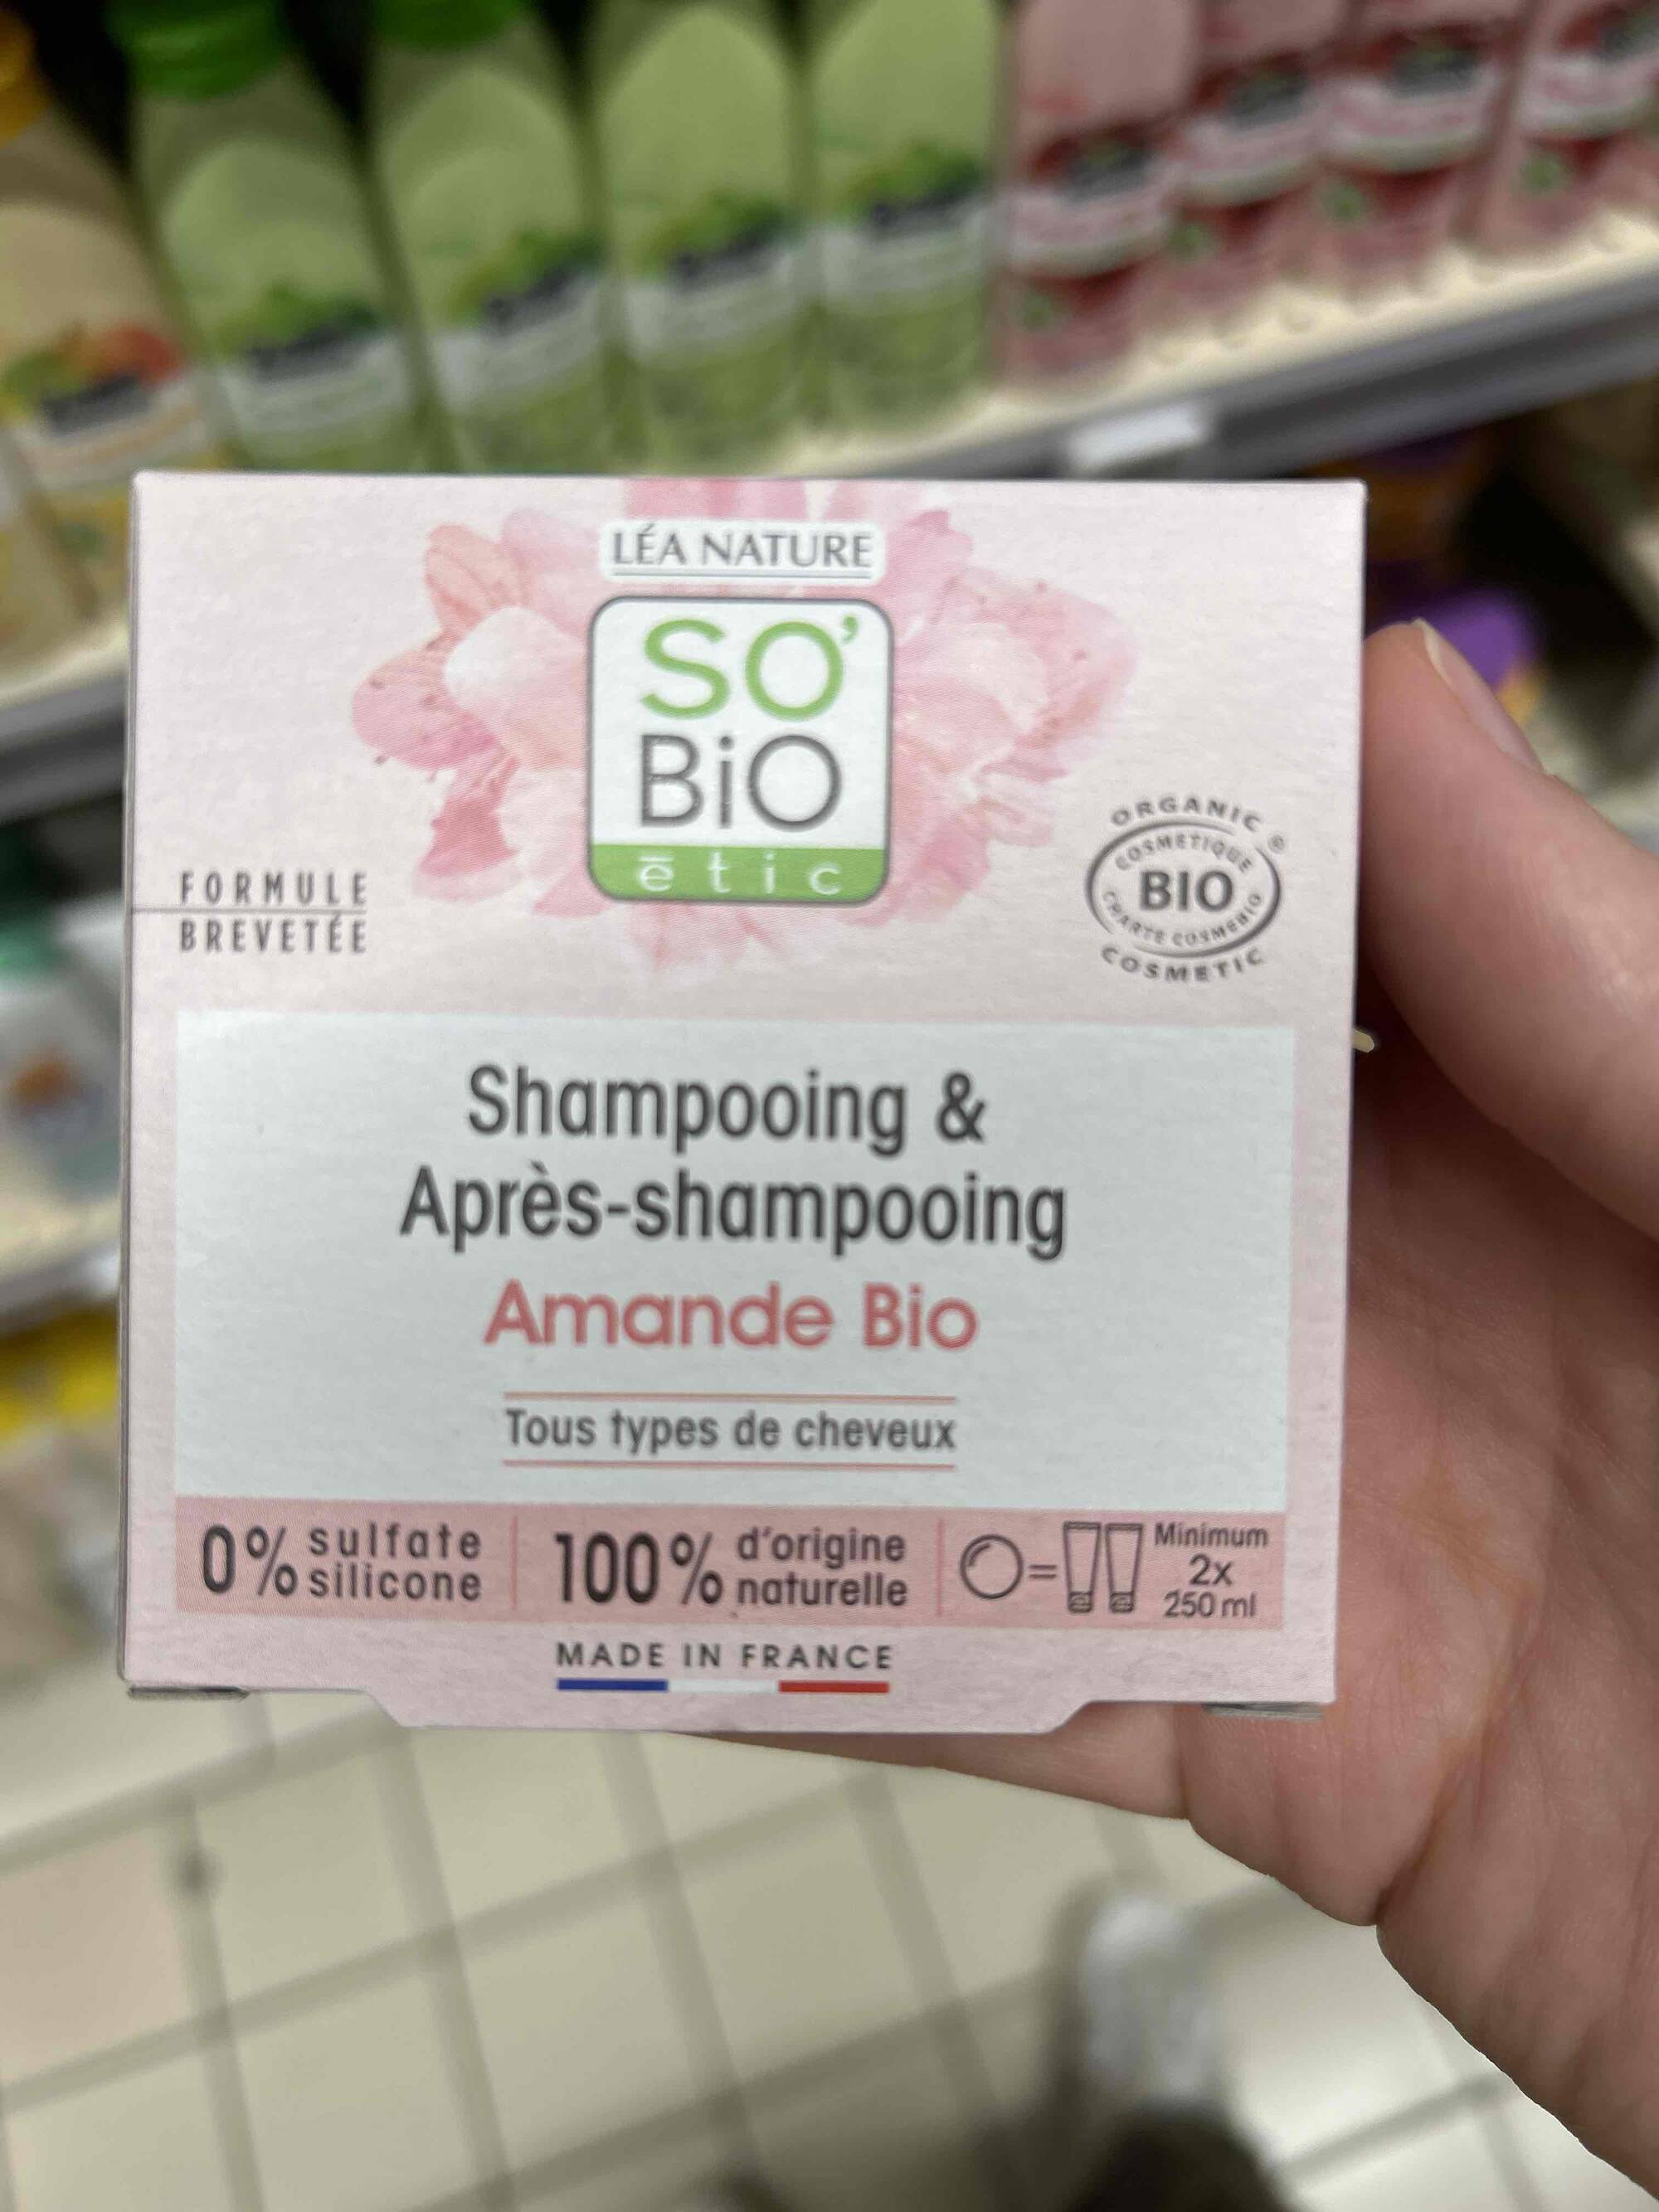 SO'BIO ÉTIC - Amande bio - Shampoing & après-shampoing